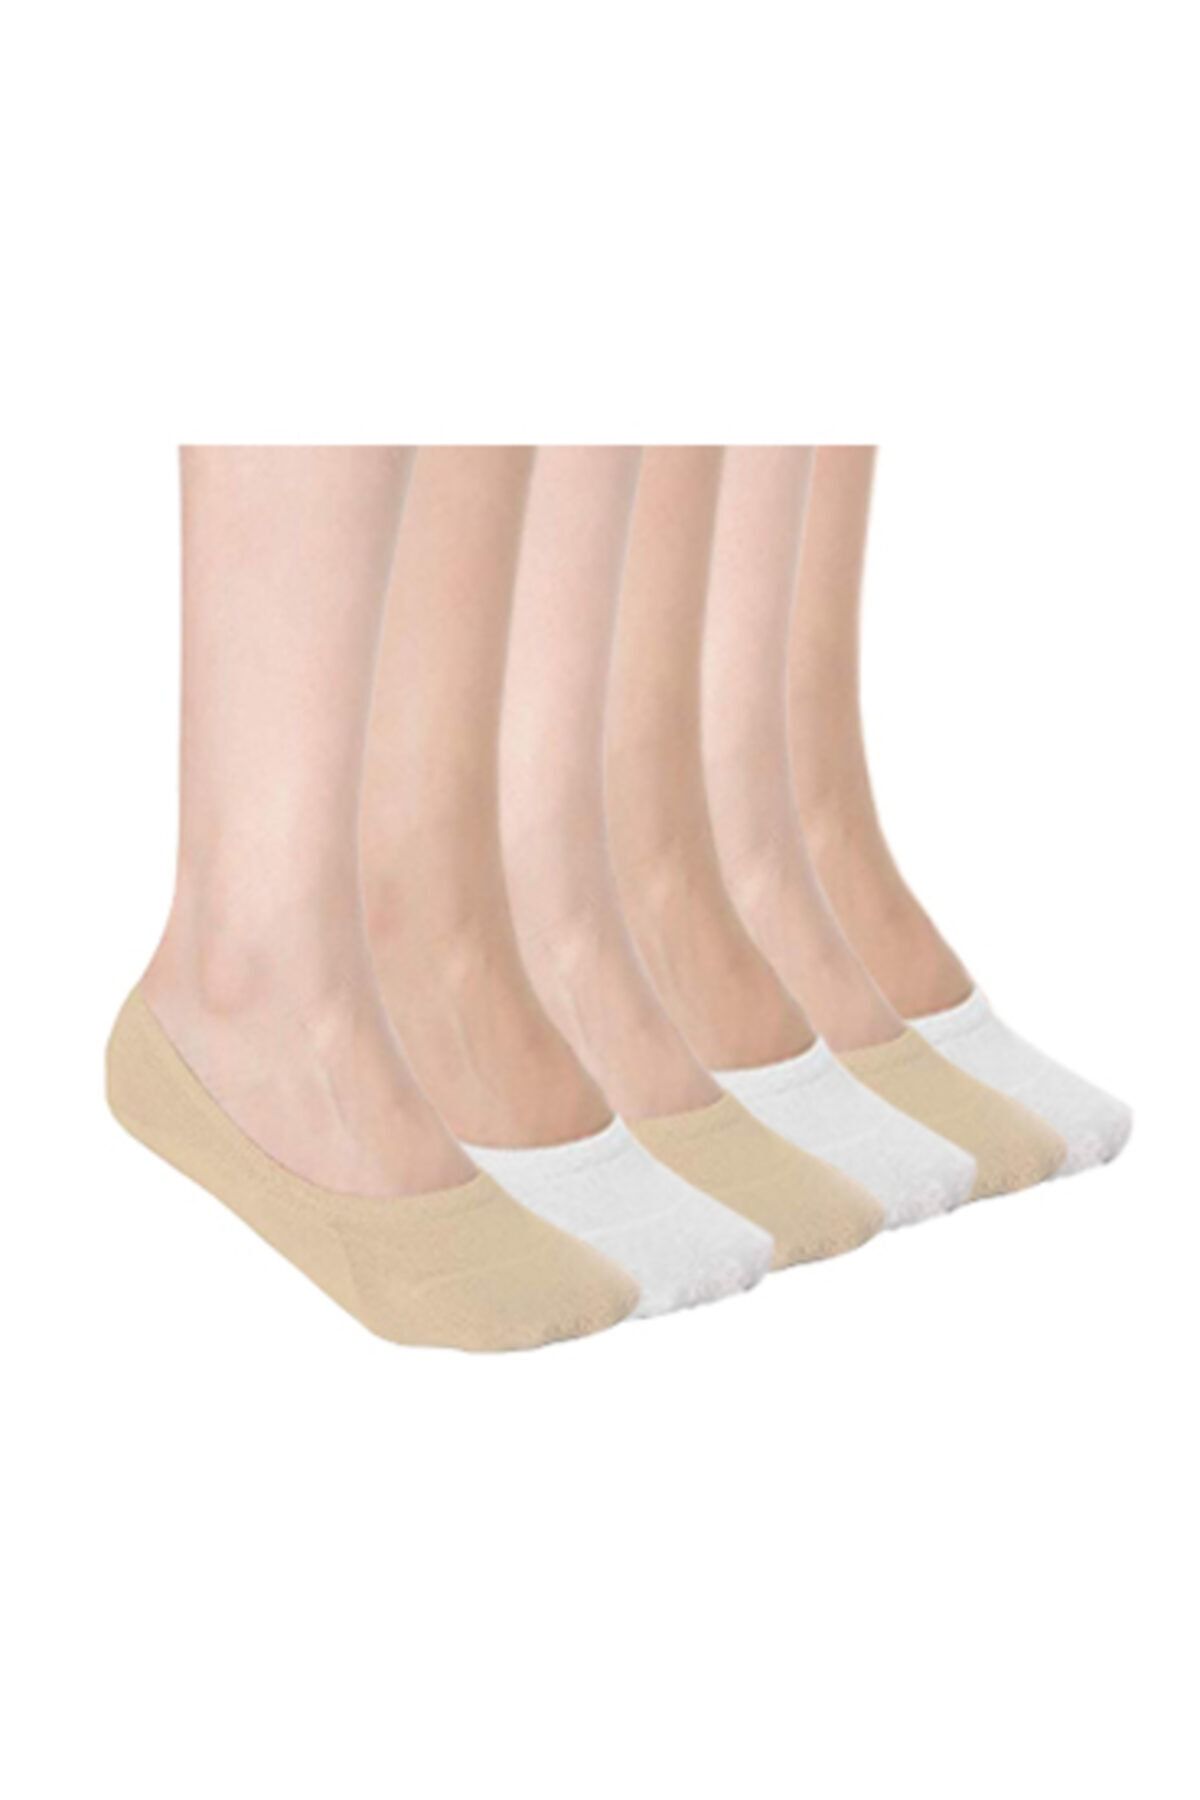 socksbox Bambu Silikonlu Unisex Babet Çorabı 8'li